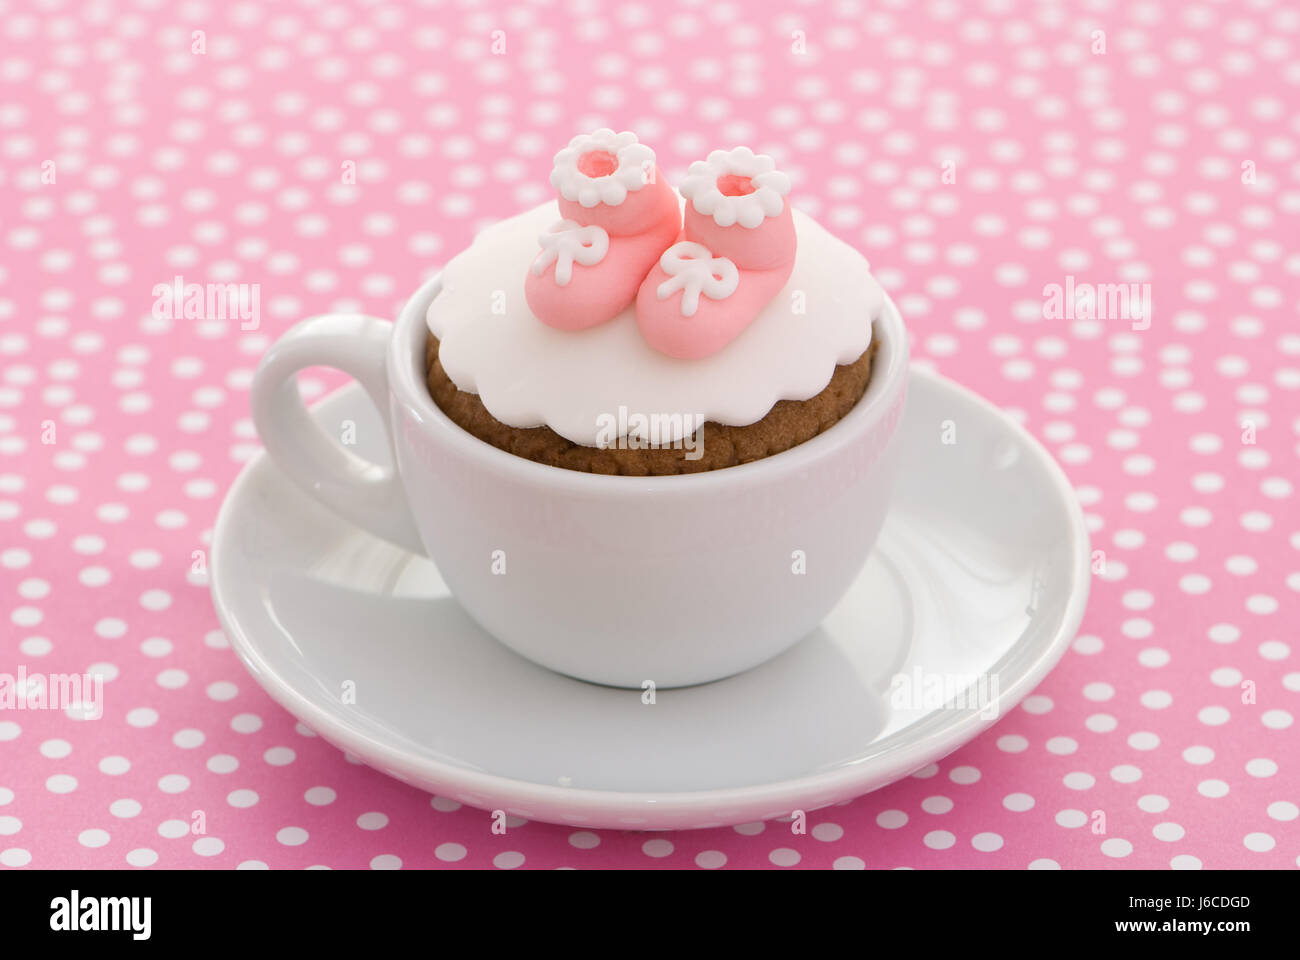 Kuchen Kuchen Mädchen Mädchen rosa Tasse Schuhe Untertasse Kuchen Torte  Taufe fleckig Hintergrund Stockfotografie - Alamy